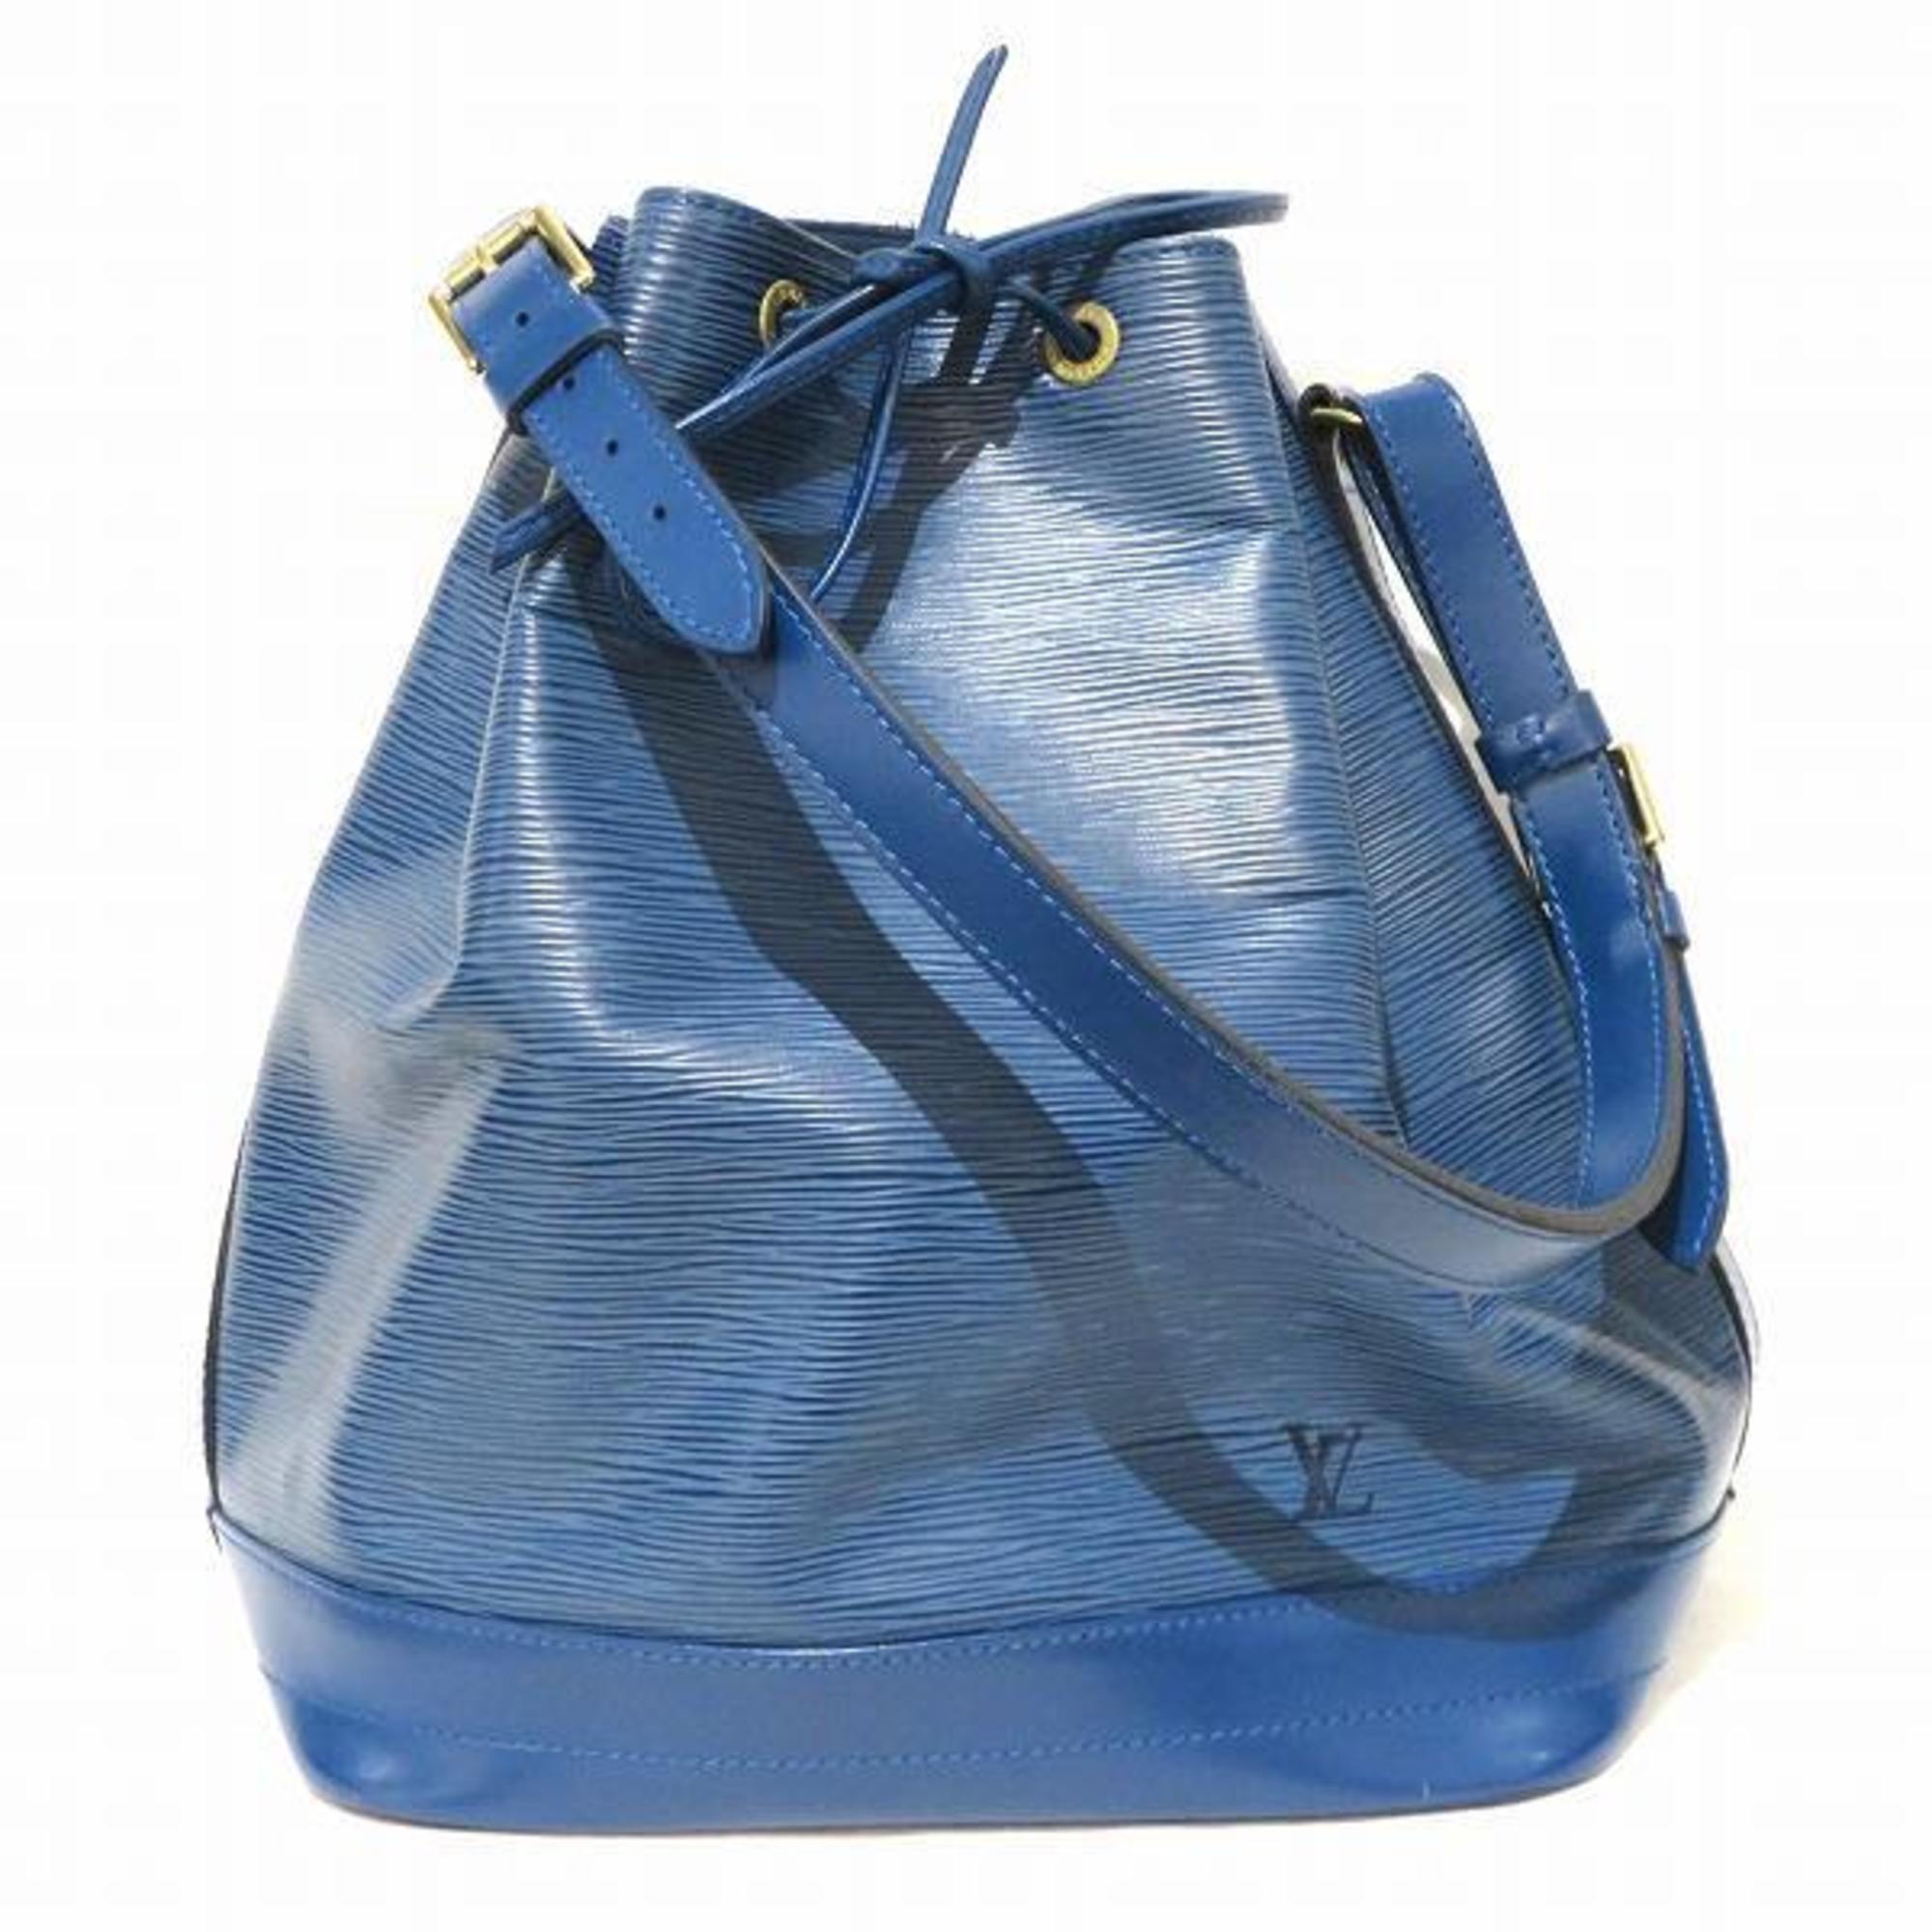 LOUIS VUITTON Shoulder Bag M44005 Noe Epi Leather blue blue Women